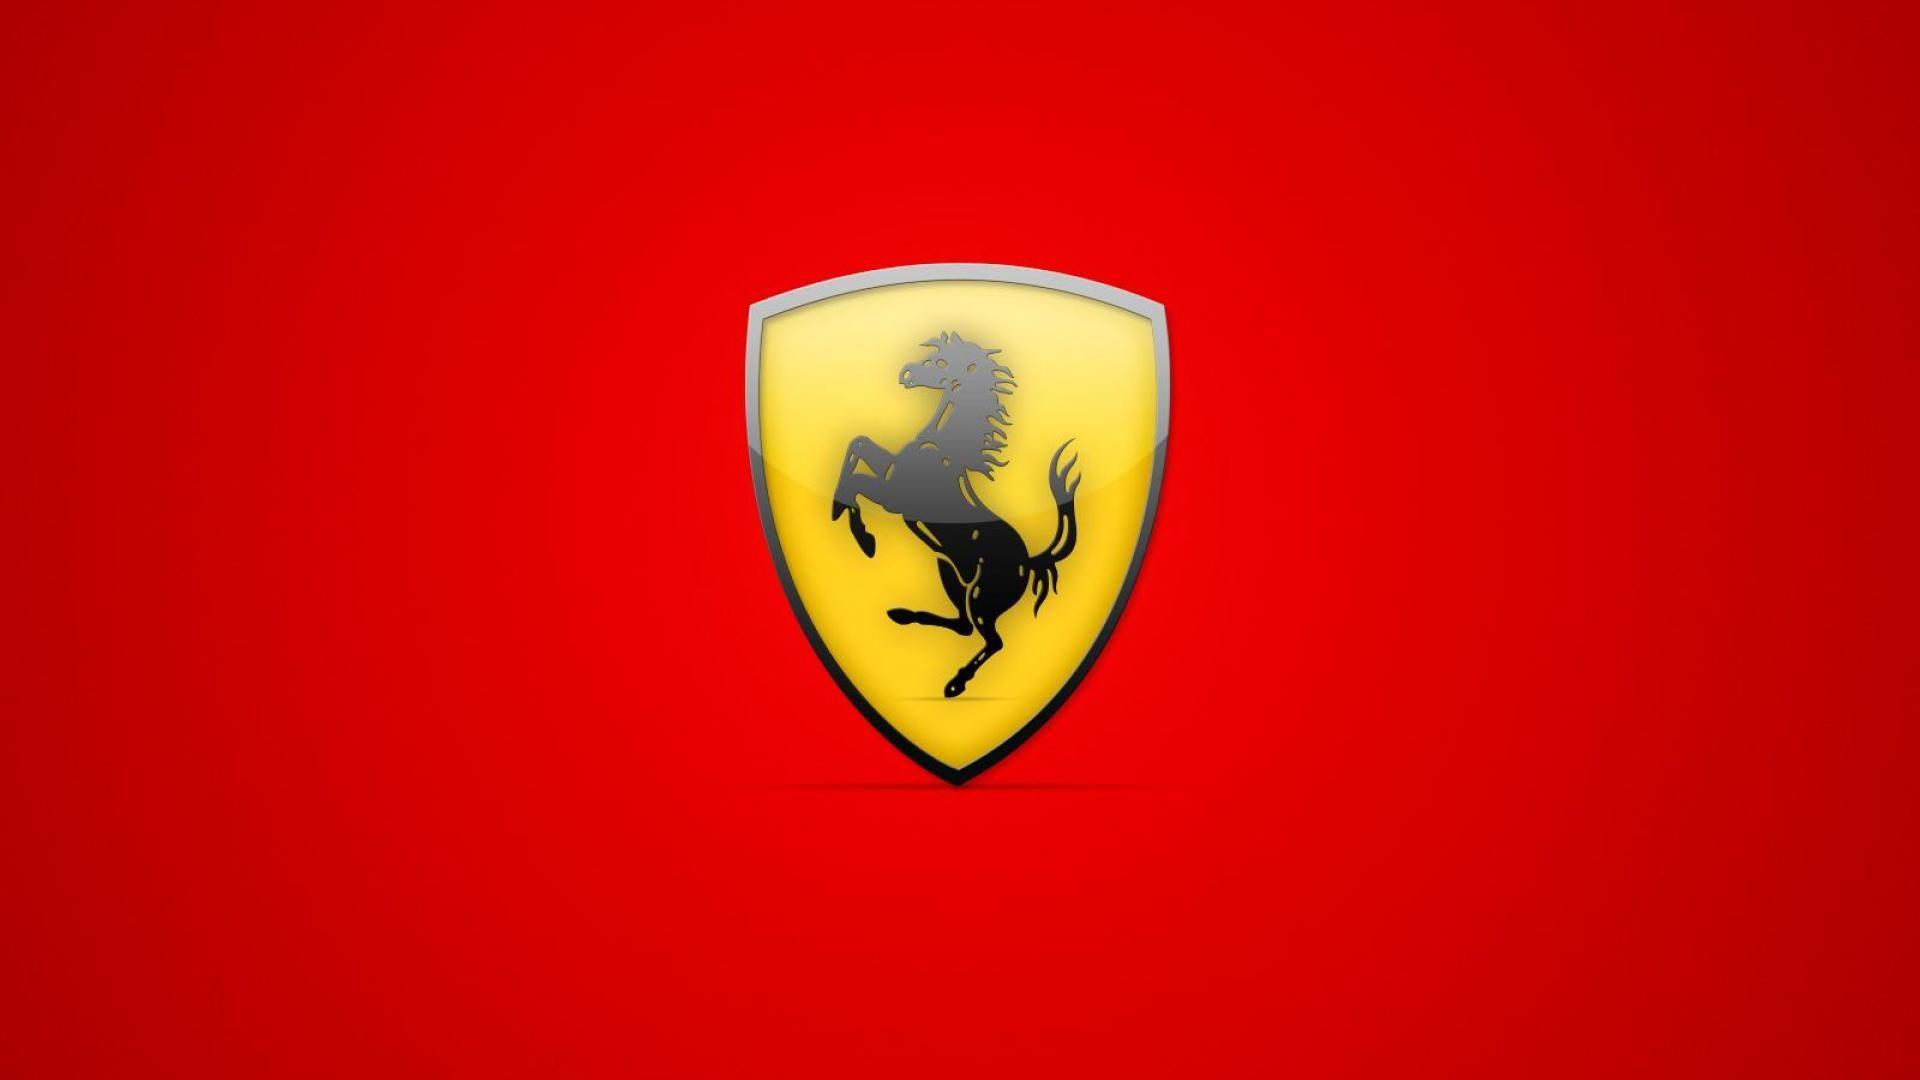 Scuderia Ferrari. F 1 Team Ferrari Scuderia. Ferrari